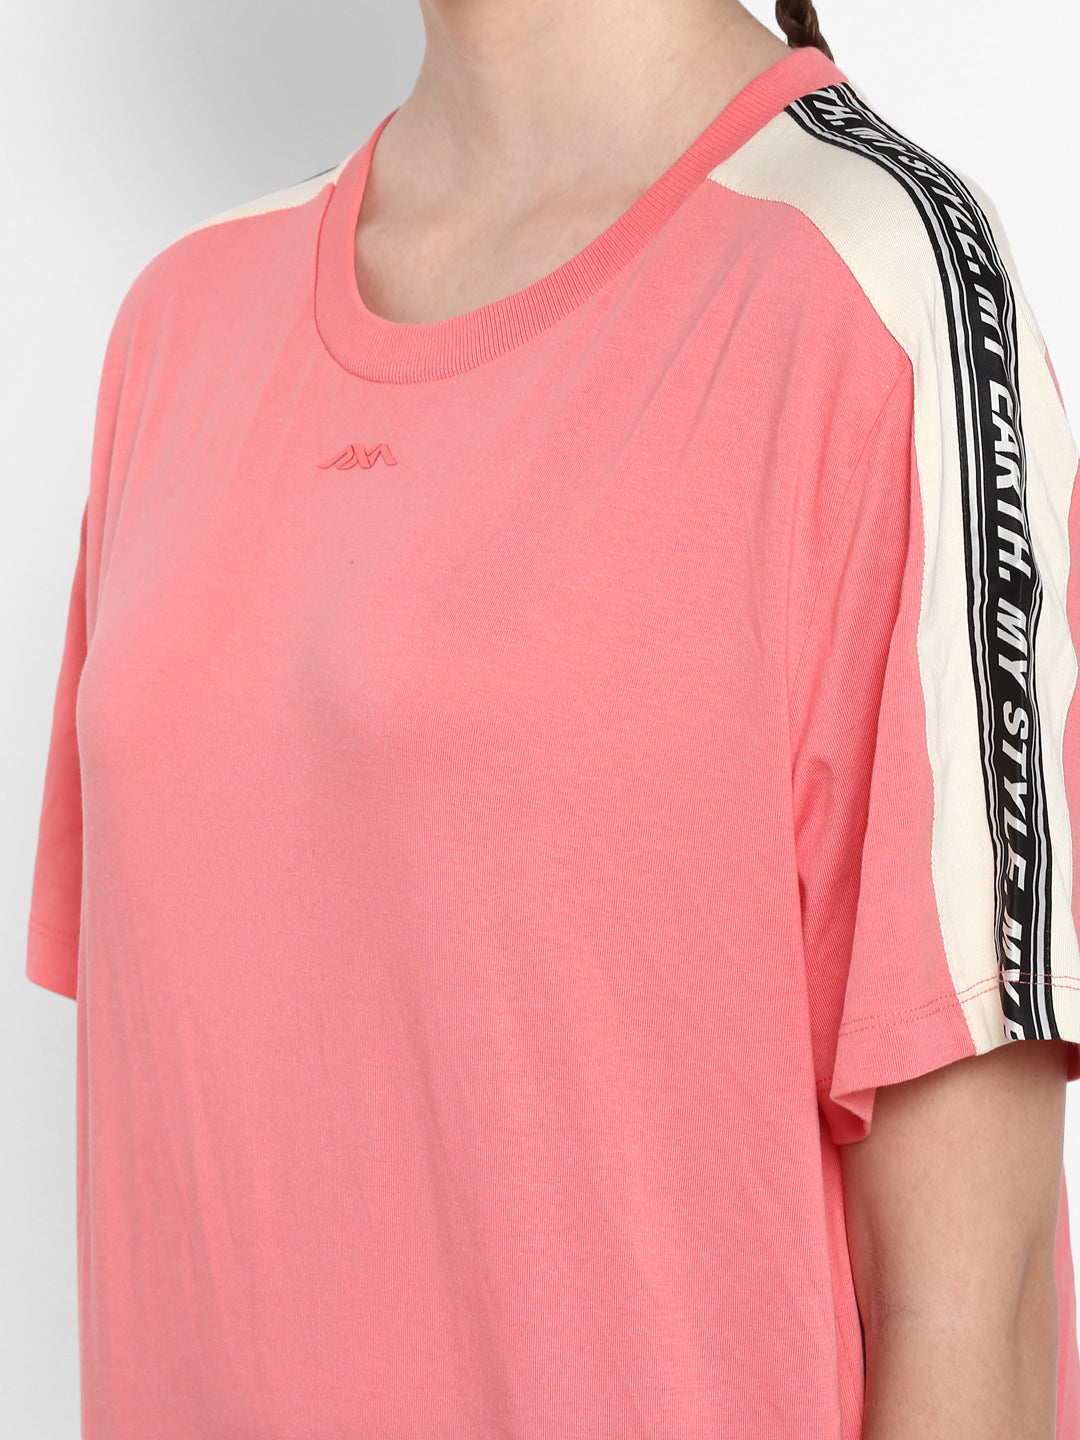 Alcis Women Printed Pink Tshirts